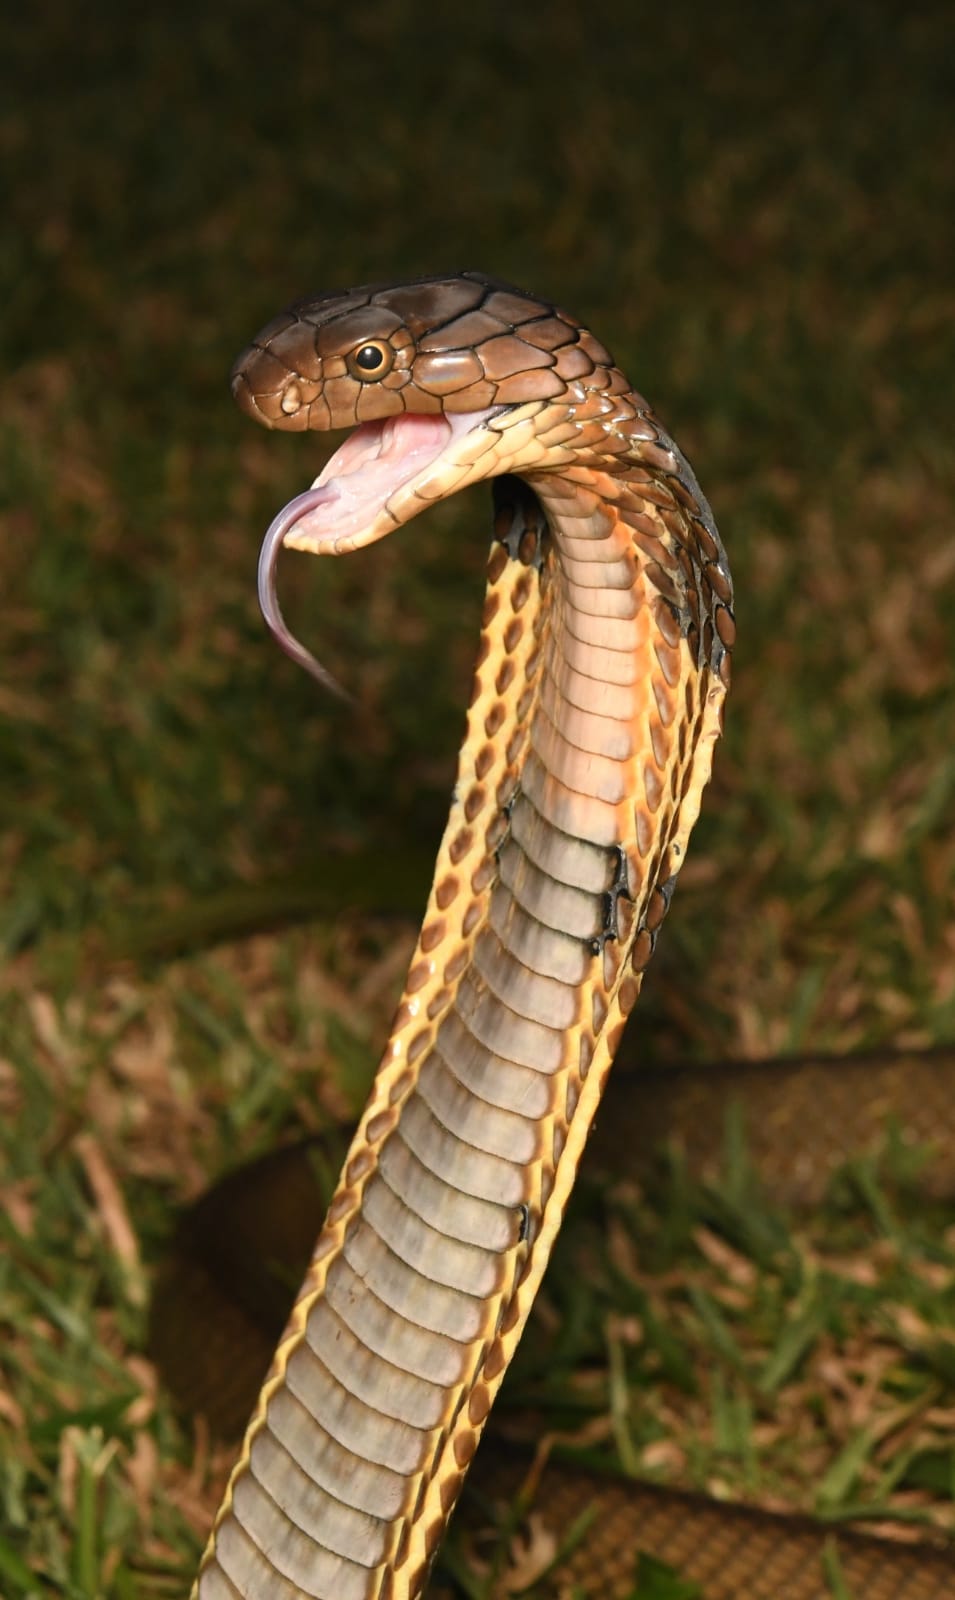 King cobra, Ophiophagus hannah - Bird Ecology Study Group